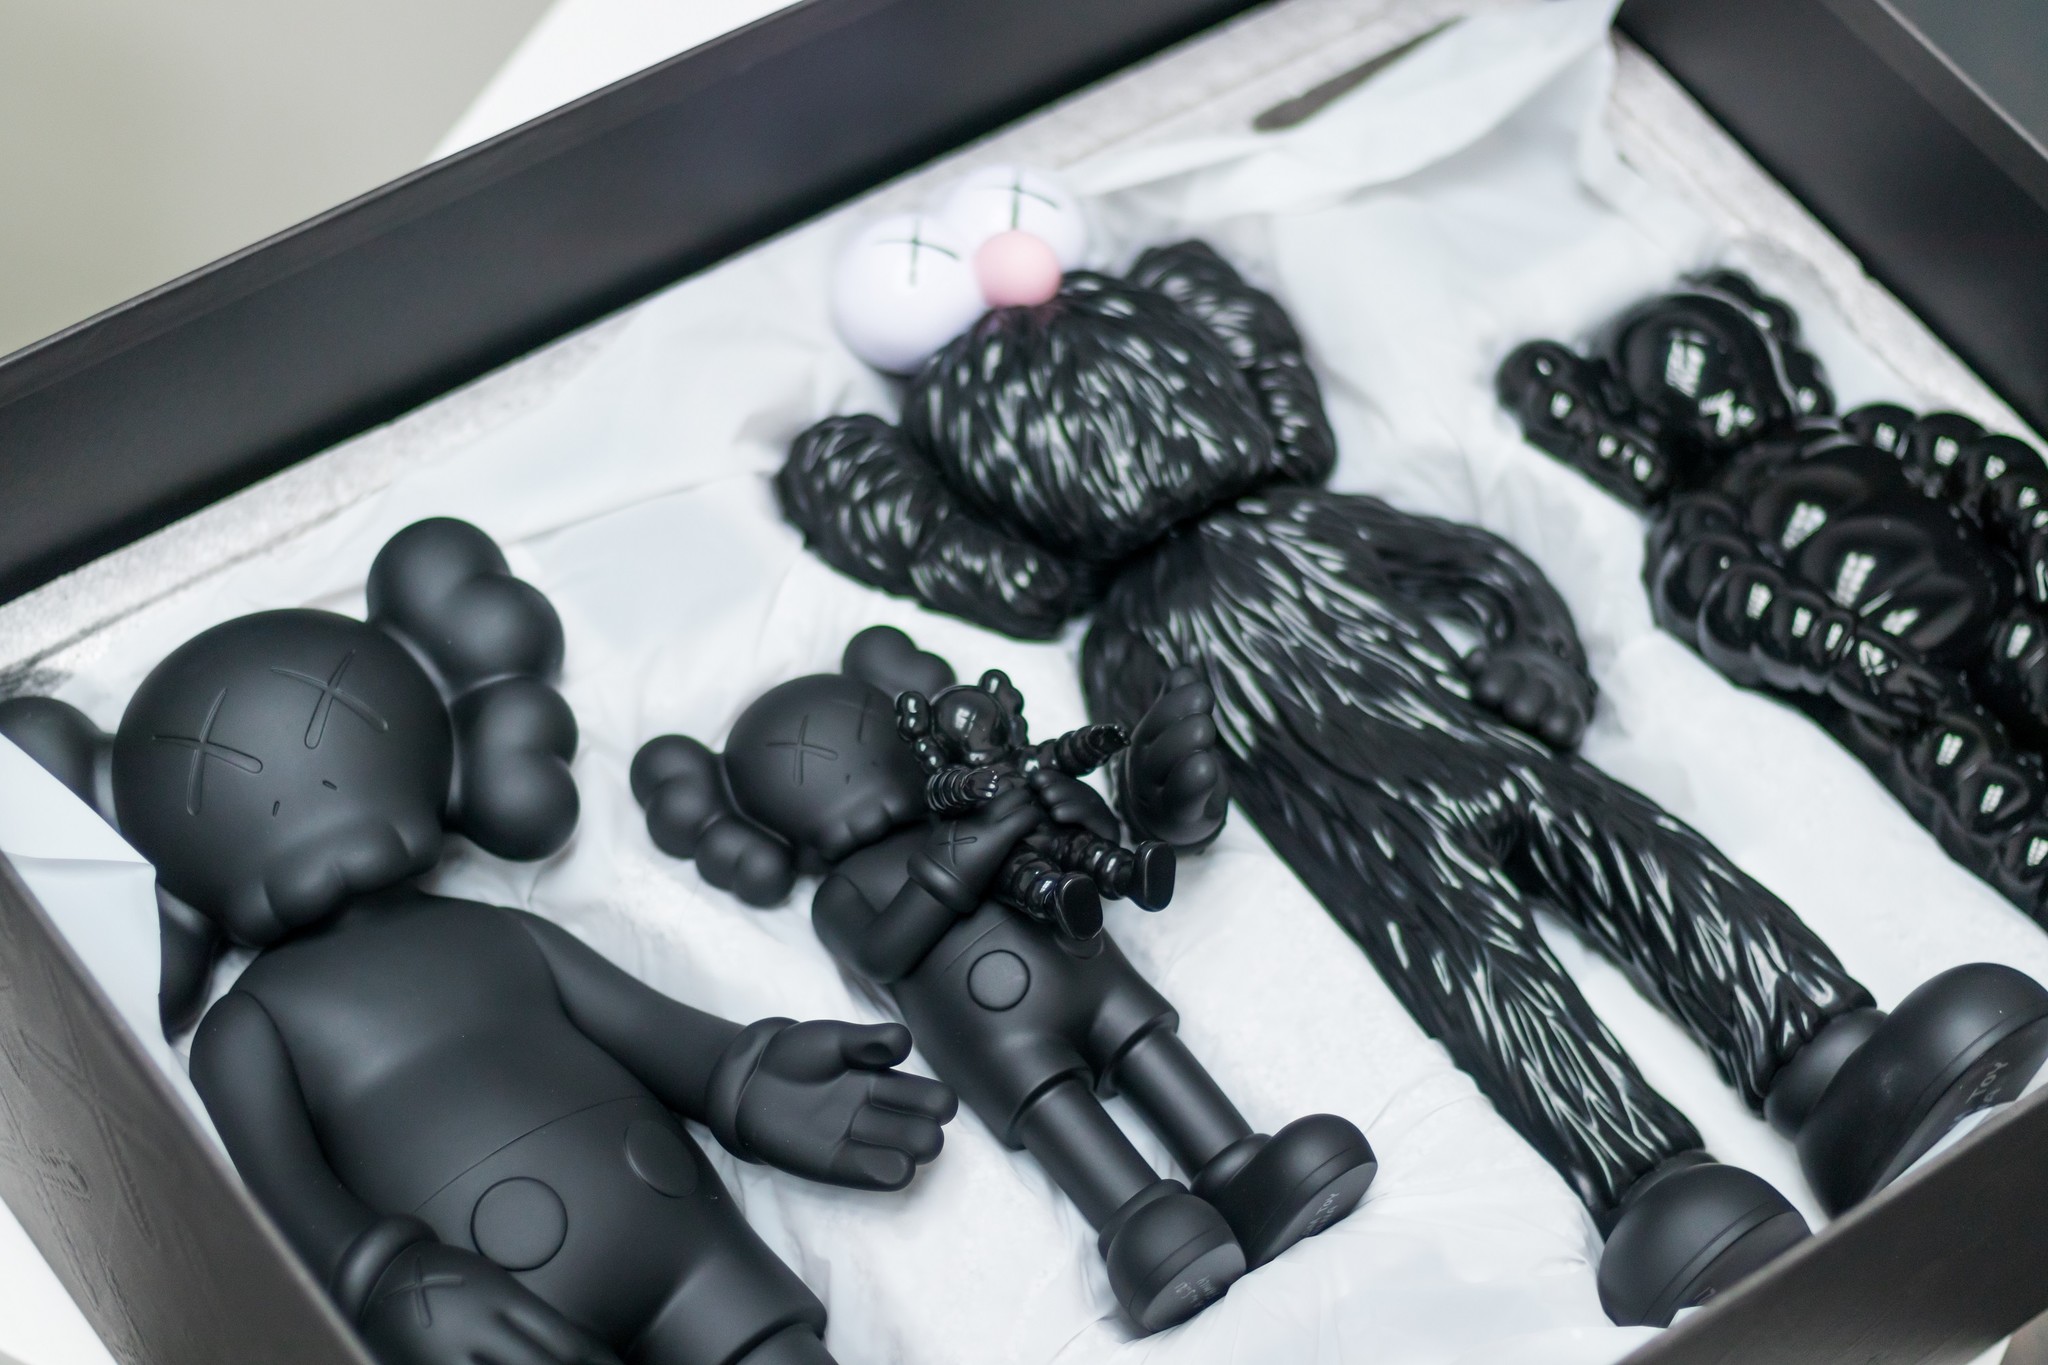 おもちゃ/ぬいぐるみKAWS FAMILY BLACK